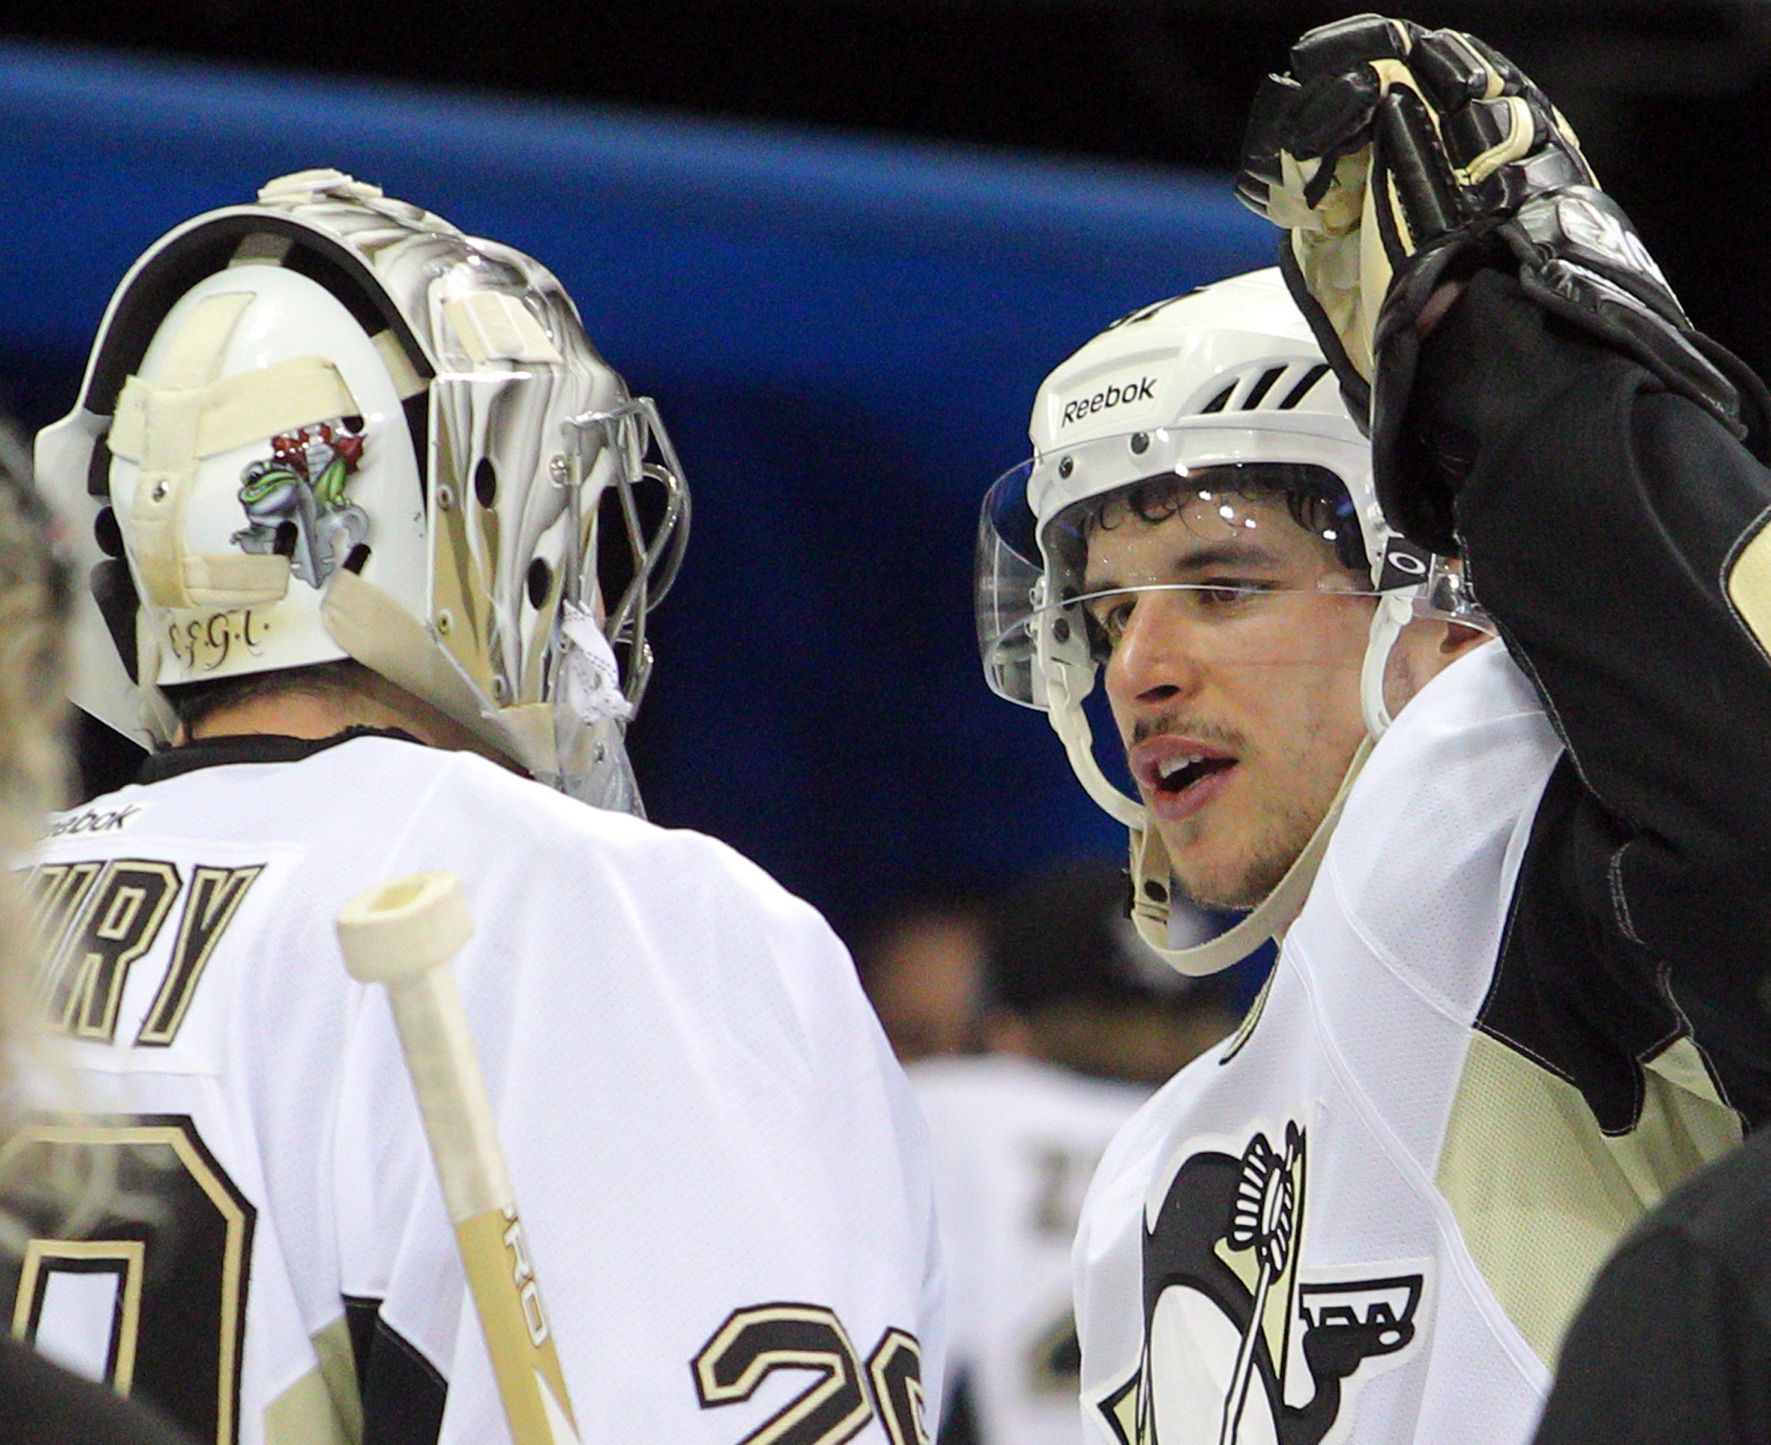 Hokejisté Pittsburghu Fleury a Crosby se radují po výhře nad Rangers